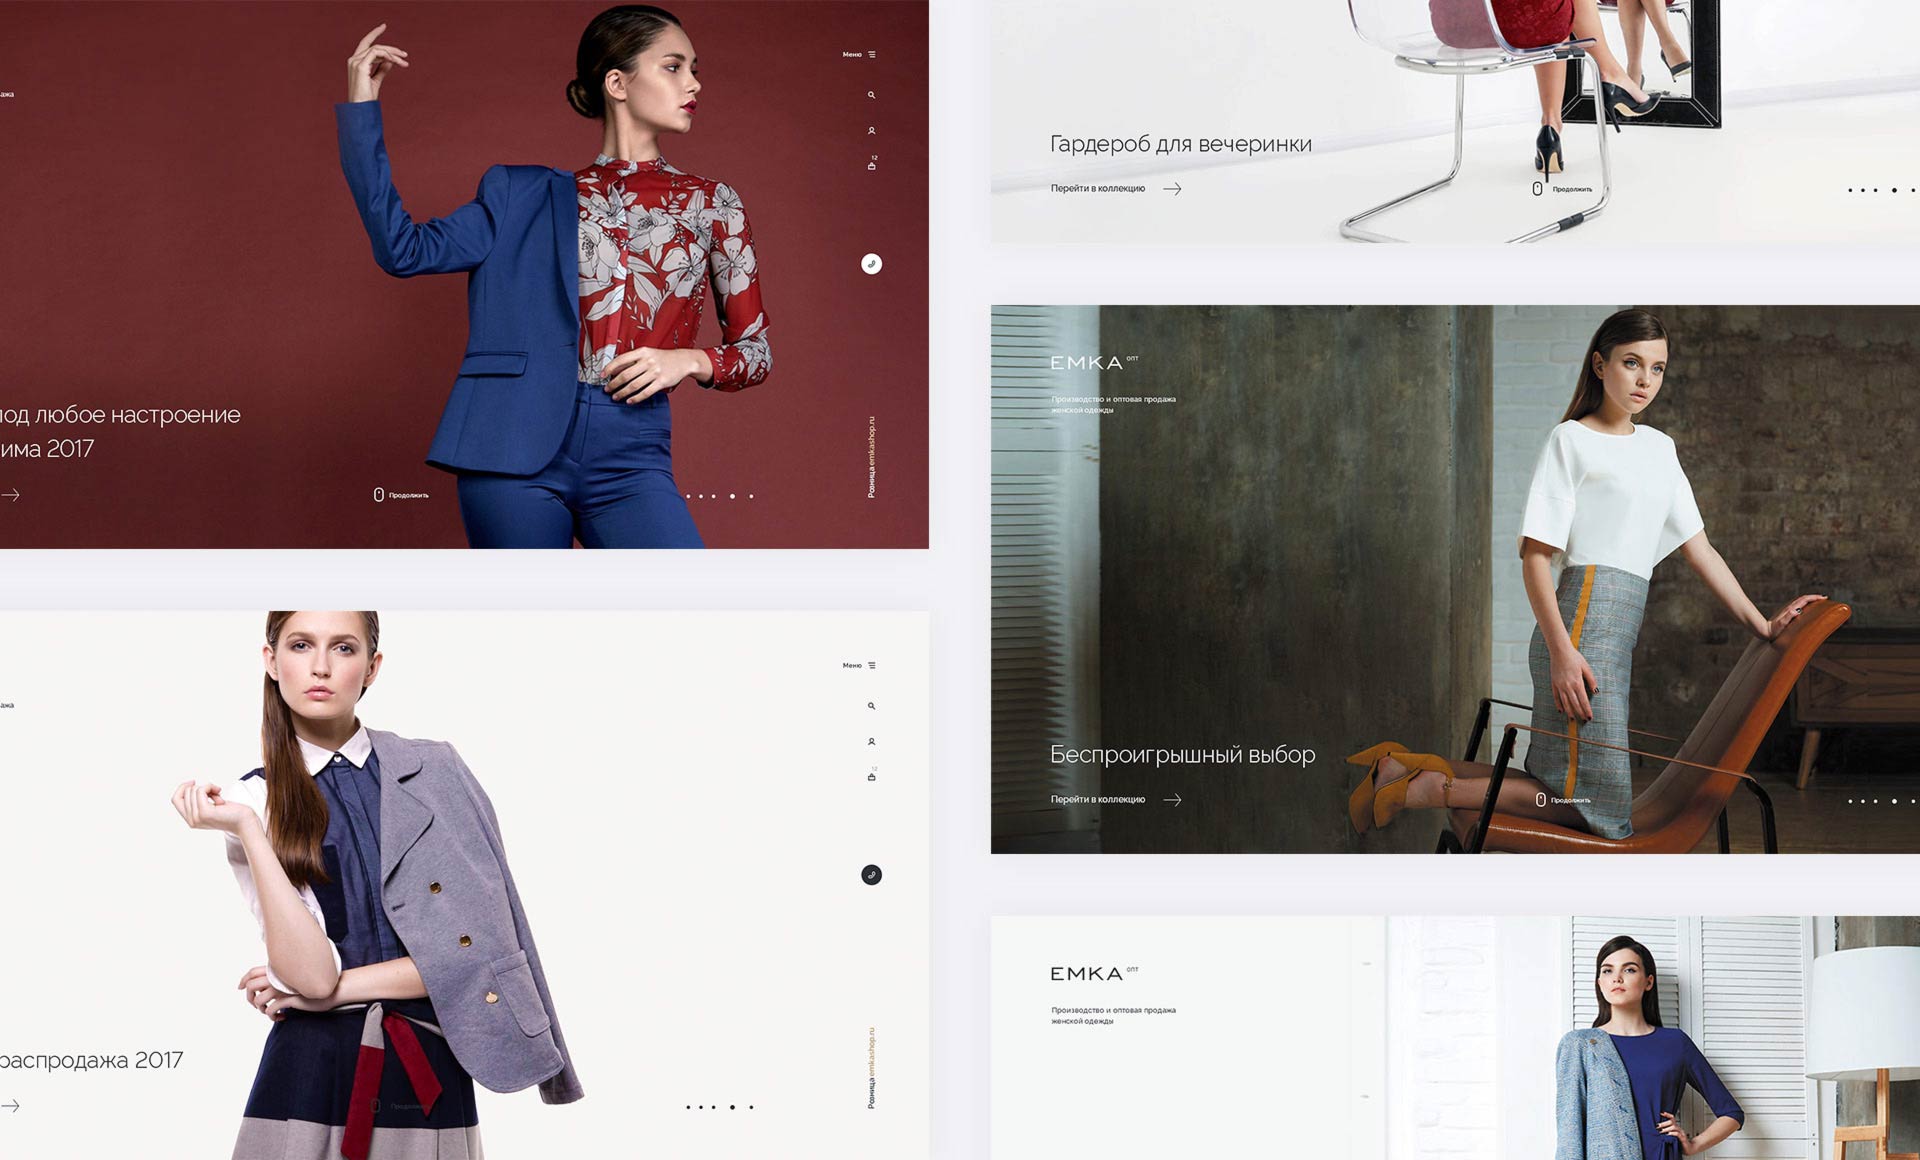 Адаптивный дизайн сайта оптового интернет-магазина женской одежды Emka.